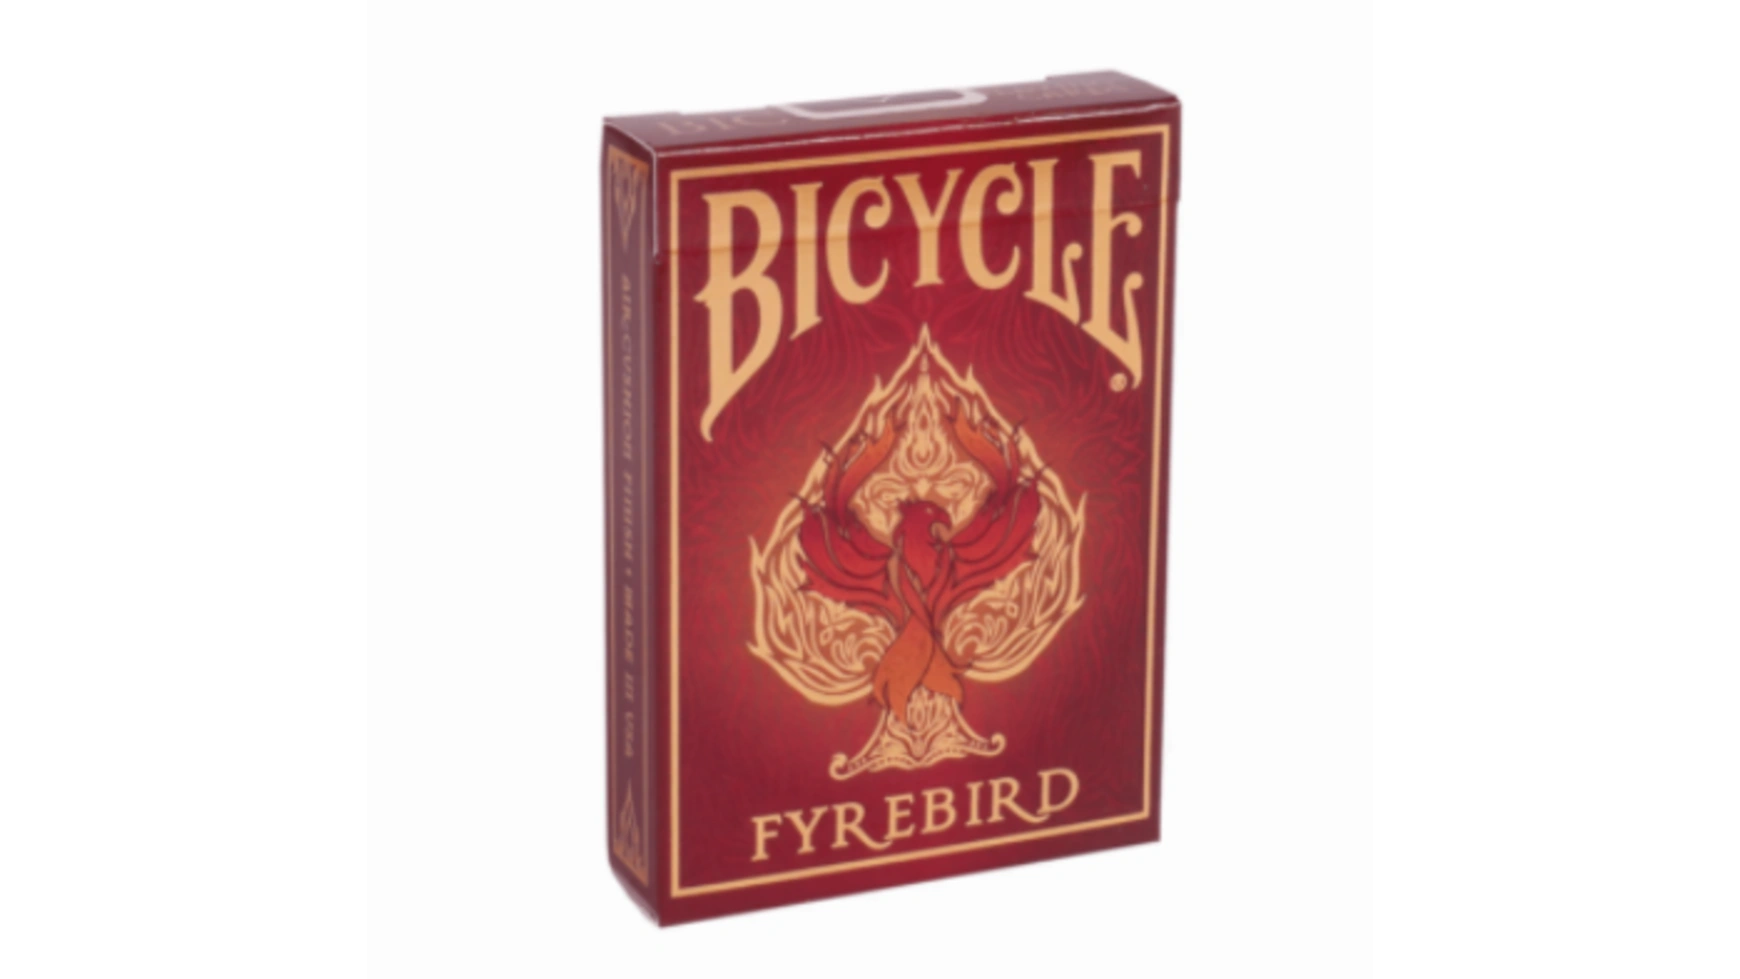 Bicycle игральные карты Fyrebird игральные карты для фокусов bicycle short deck короткая колода